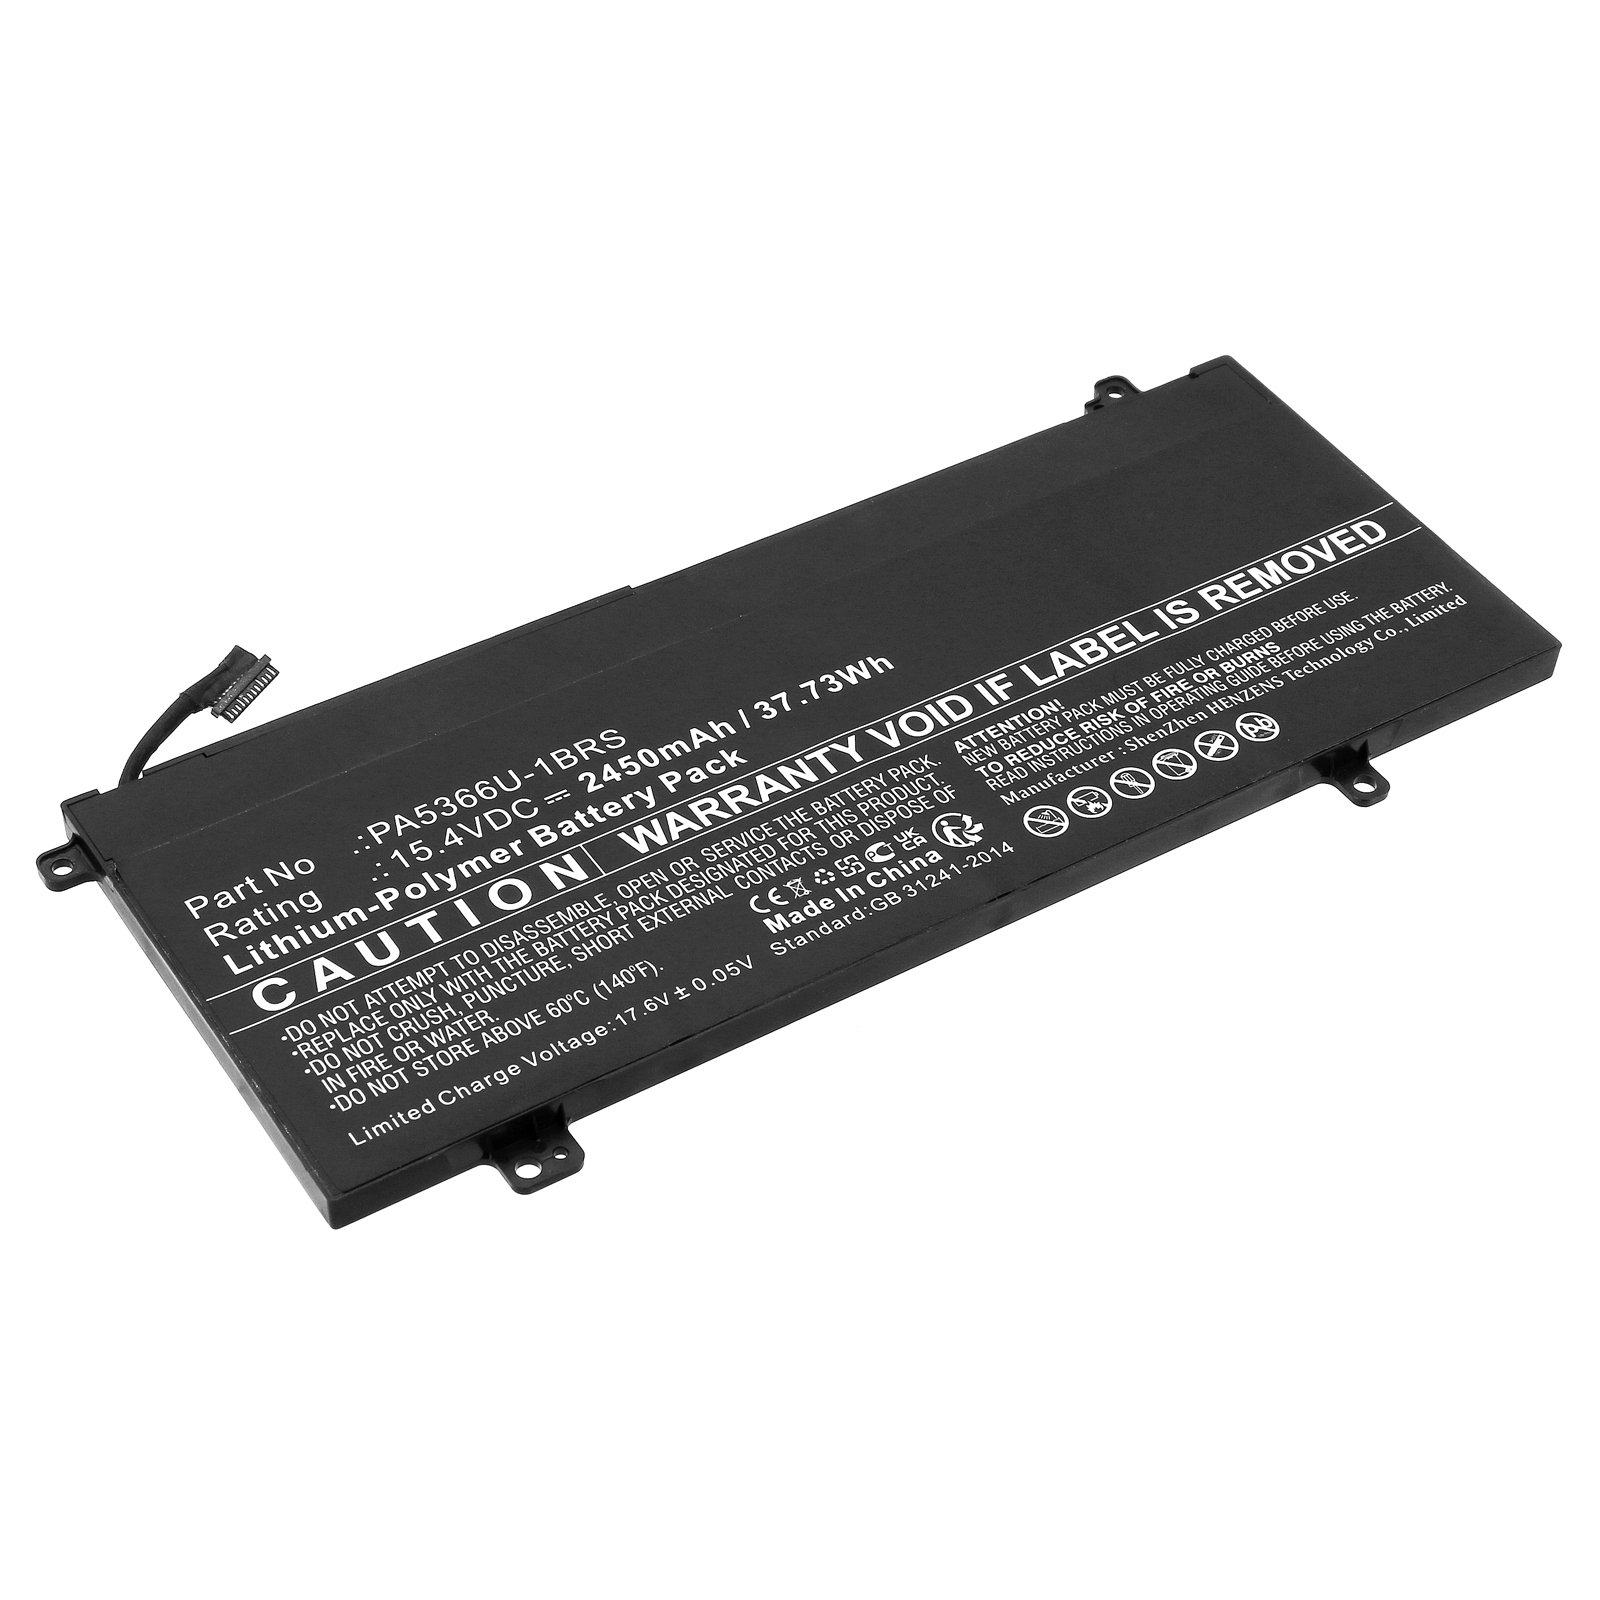 Synergy Digital Laptop Battery, Compatible with Toshiba PA5366U-1BRS Laptop Battery (Li-Pol, 15.4V, 2450mAh)